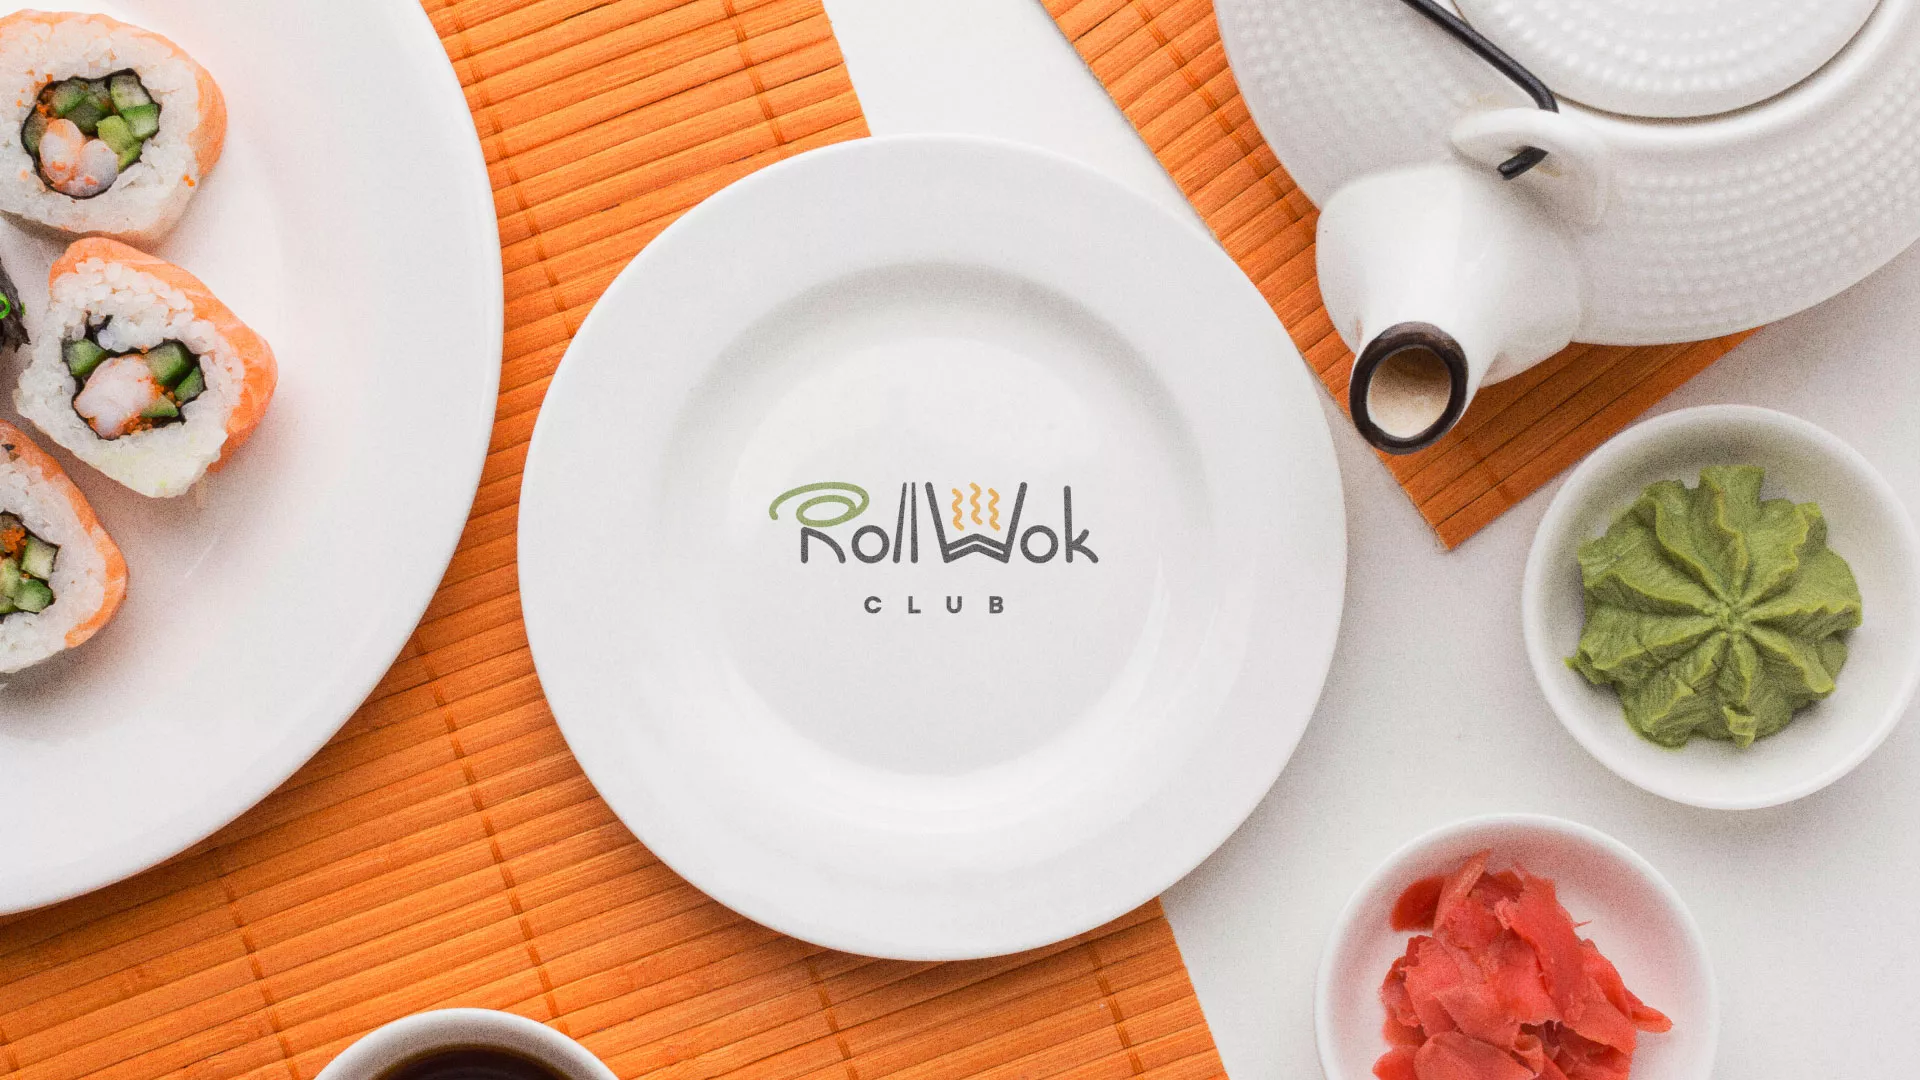 Разработка логотипа и фирменного стиля суши-бара «Roll Wok Club» в Дальнегорске